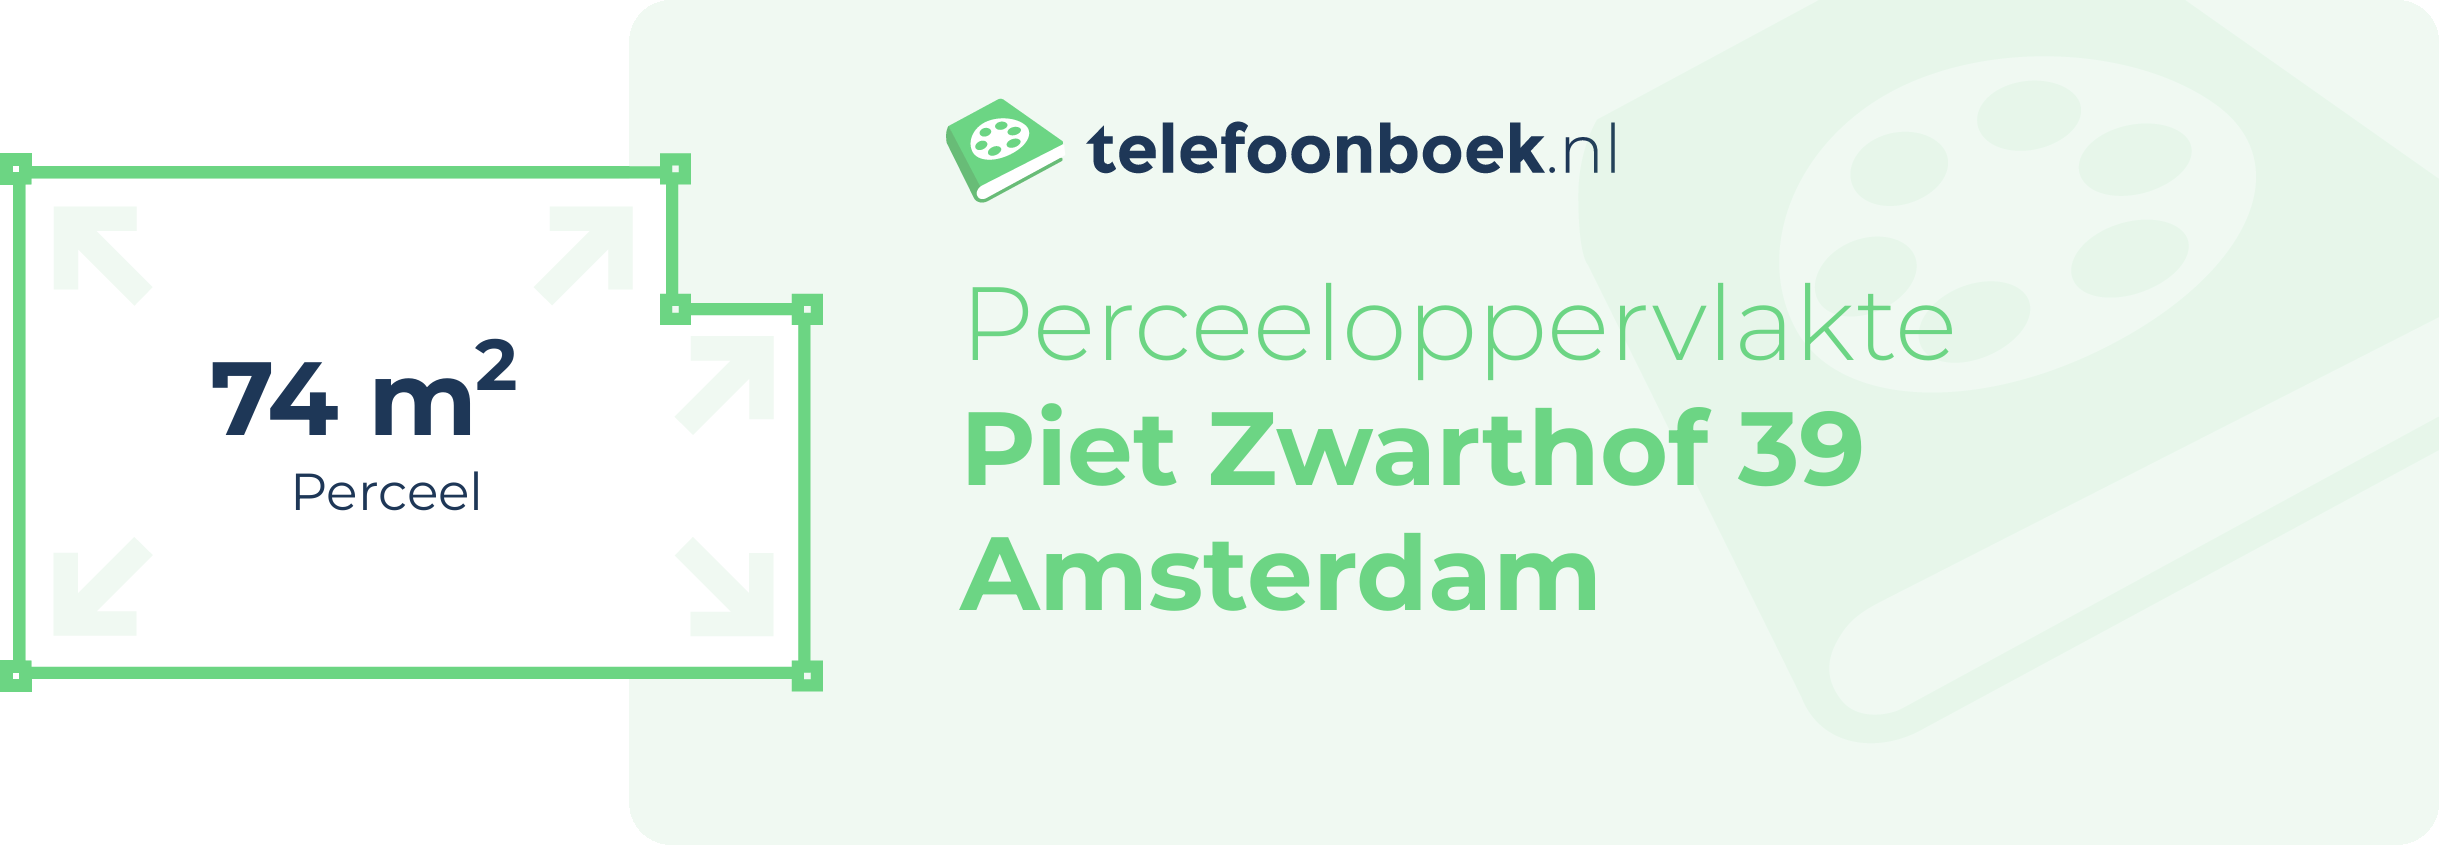 Perceeloppervlakte Piet Zwarthof 39 Amsterdam